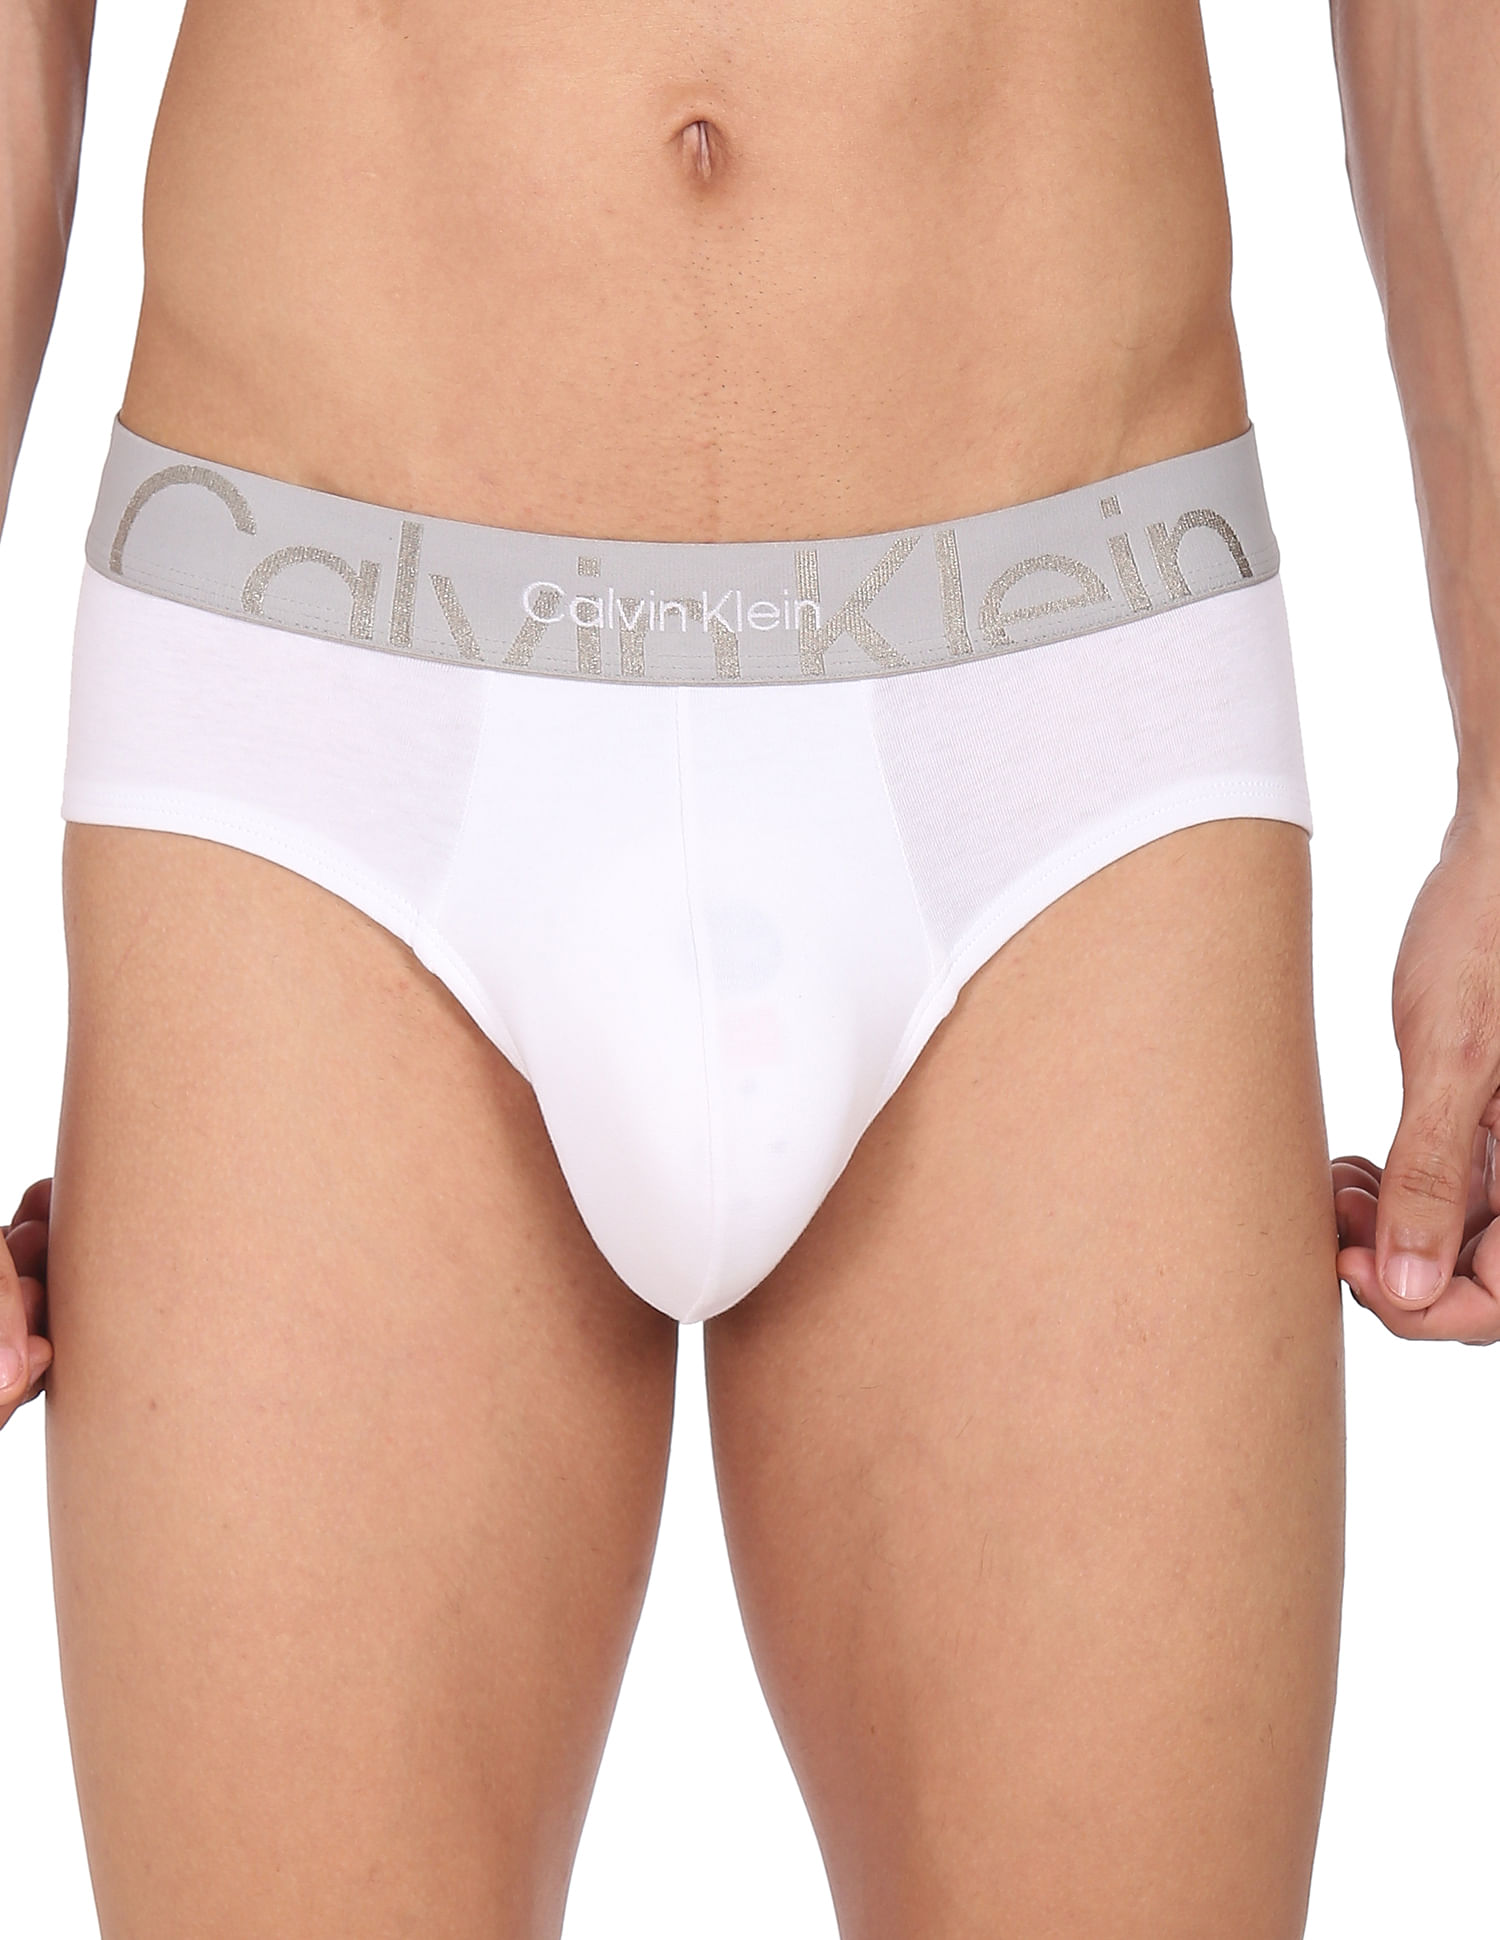 Buy Calvin Klein Underwear Men White Contrast Waistband Solid Hip Briefs -  NNNOW.com